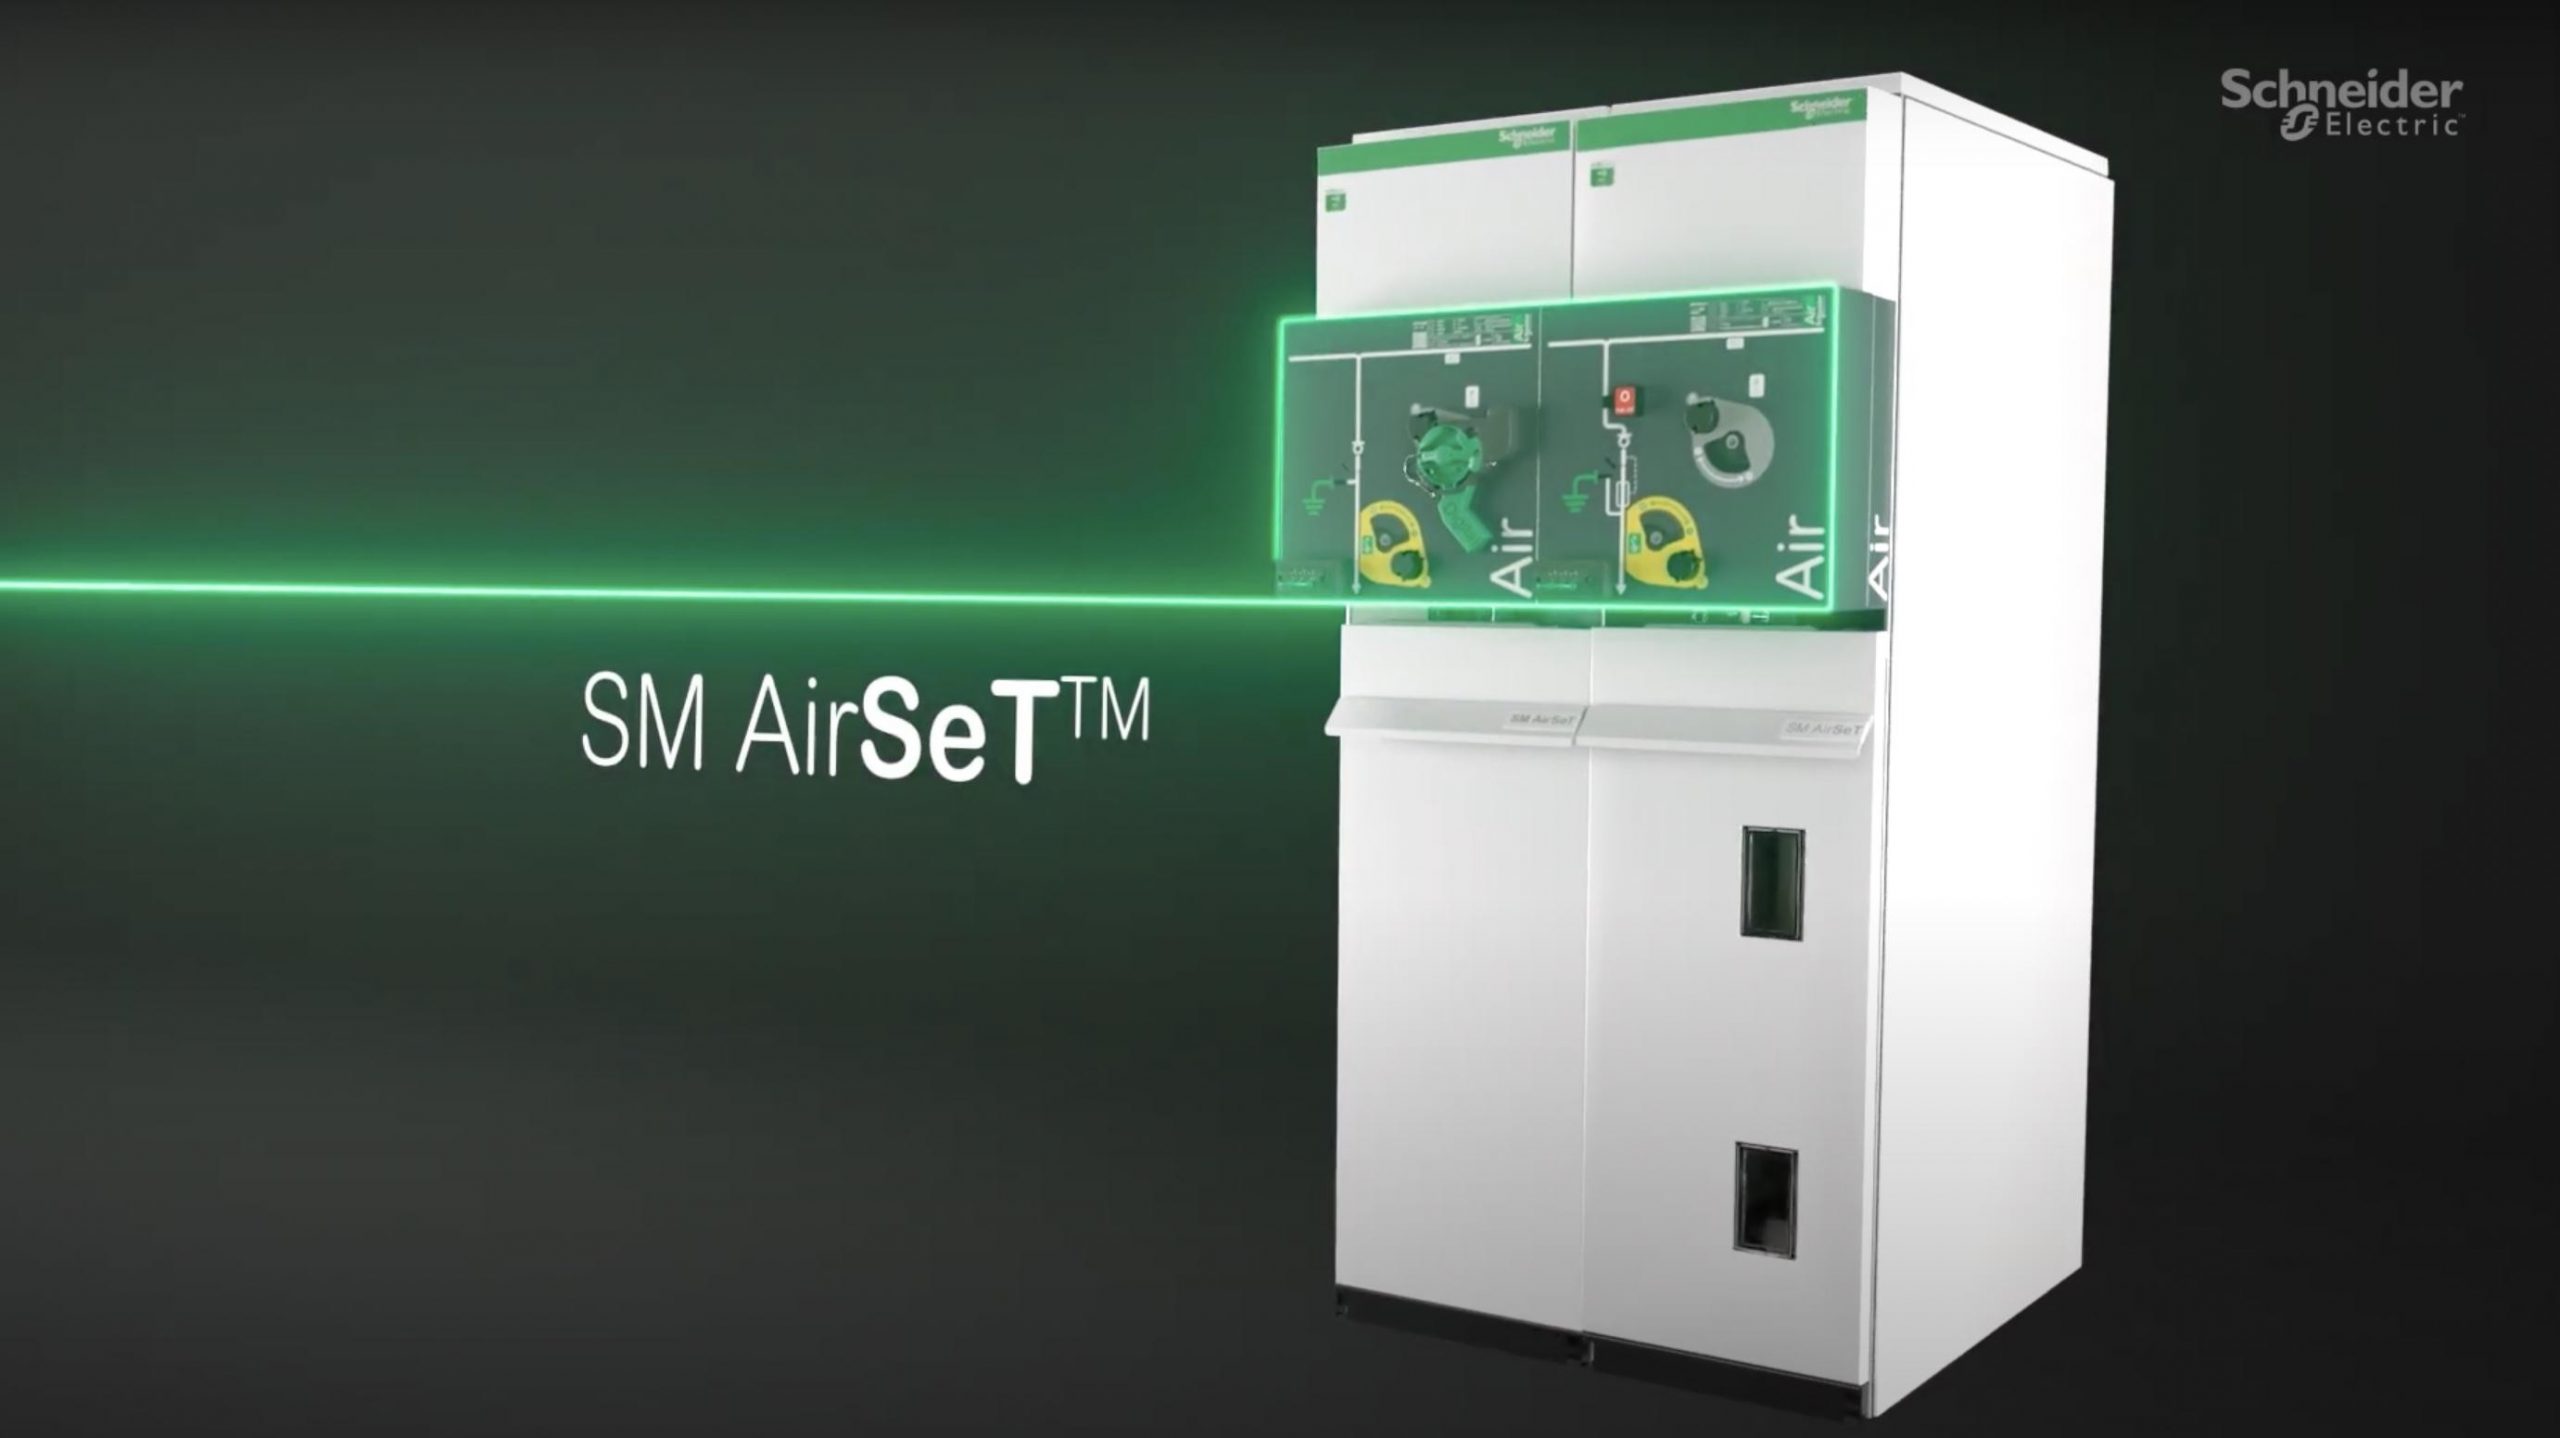 Schneider Electric innova en tecnología sostenible con celdas de MT sin SF6 - ASEISA